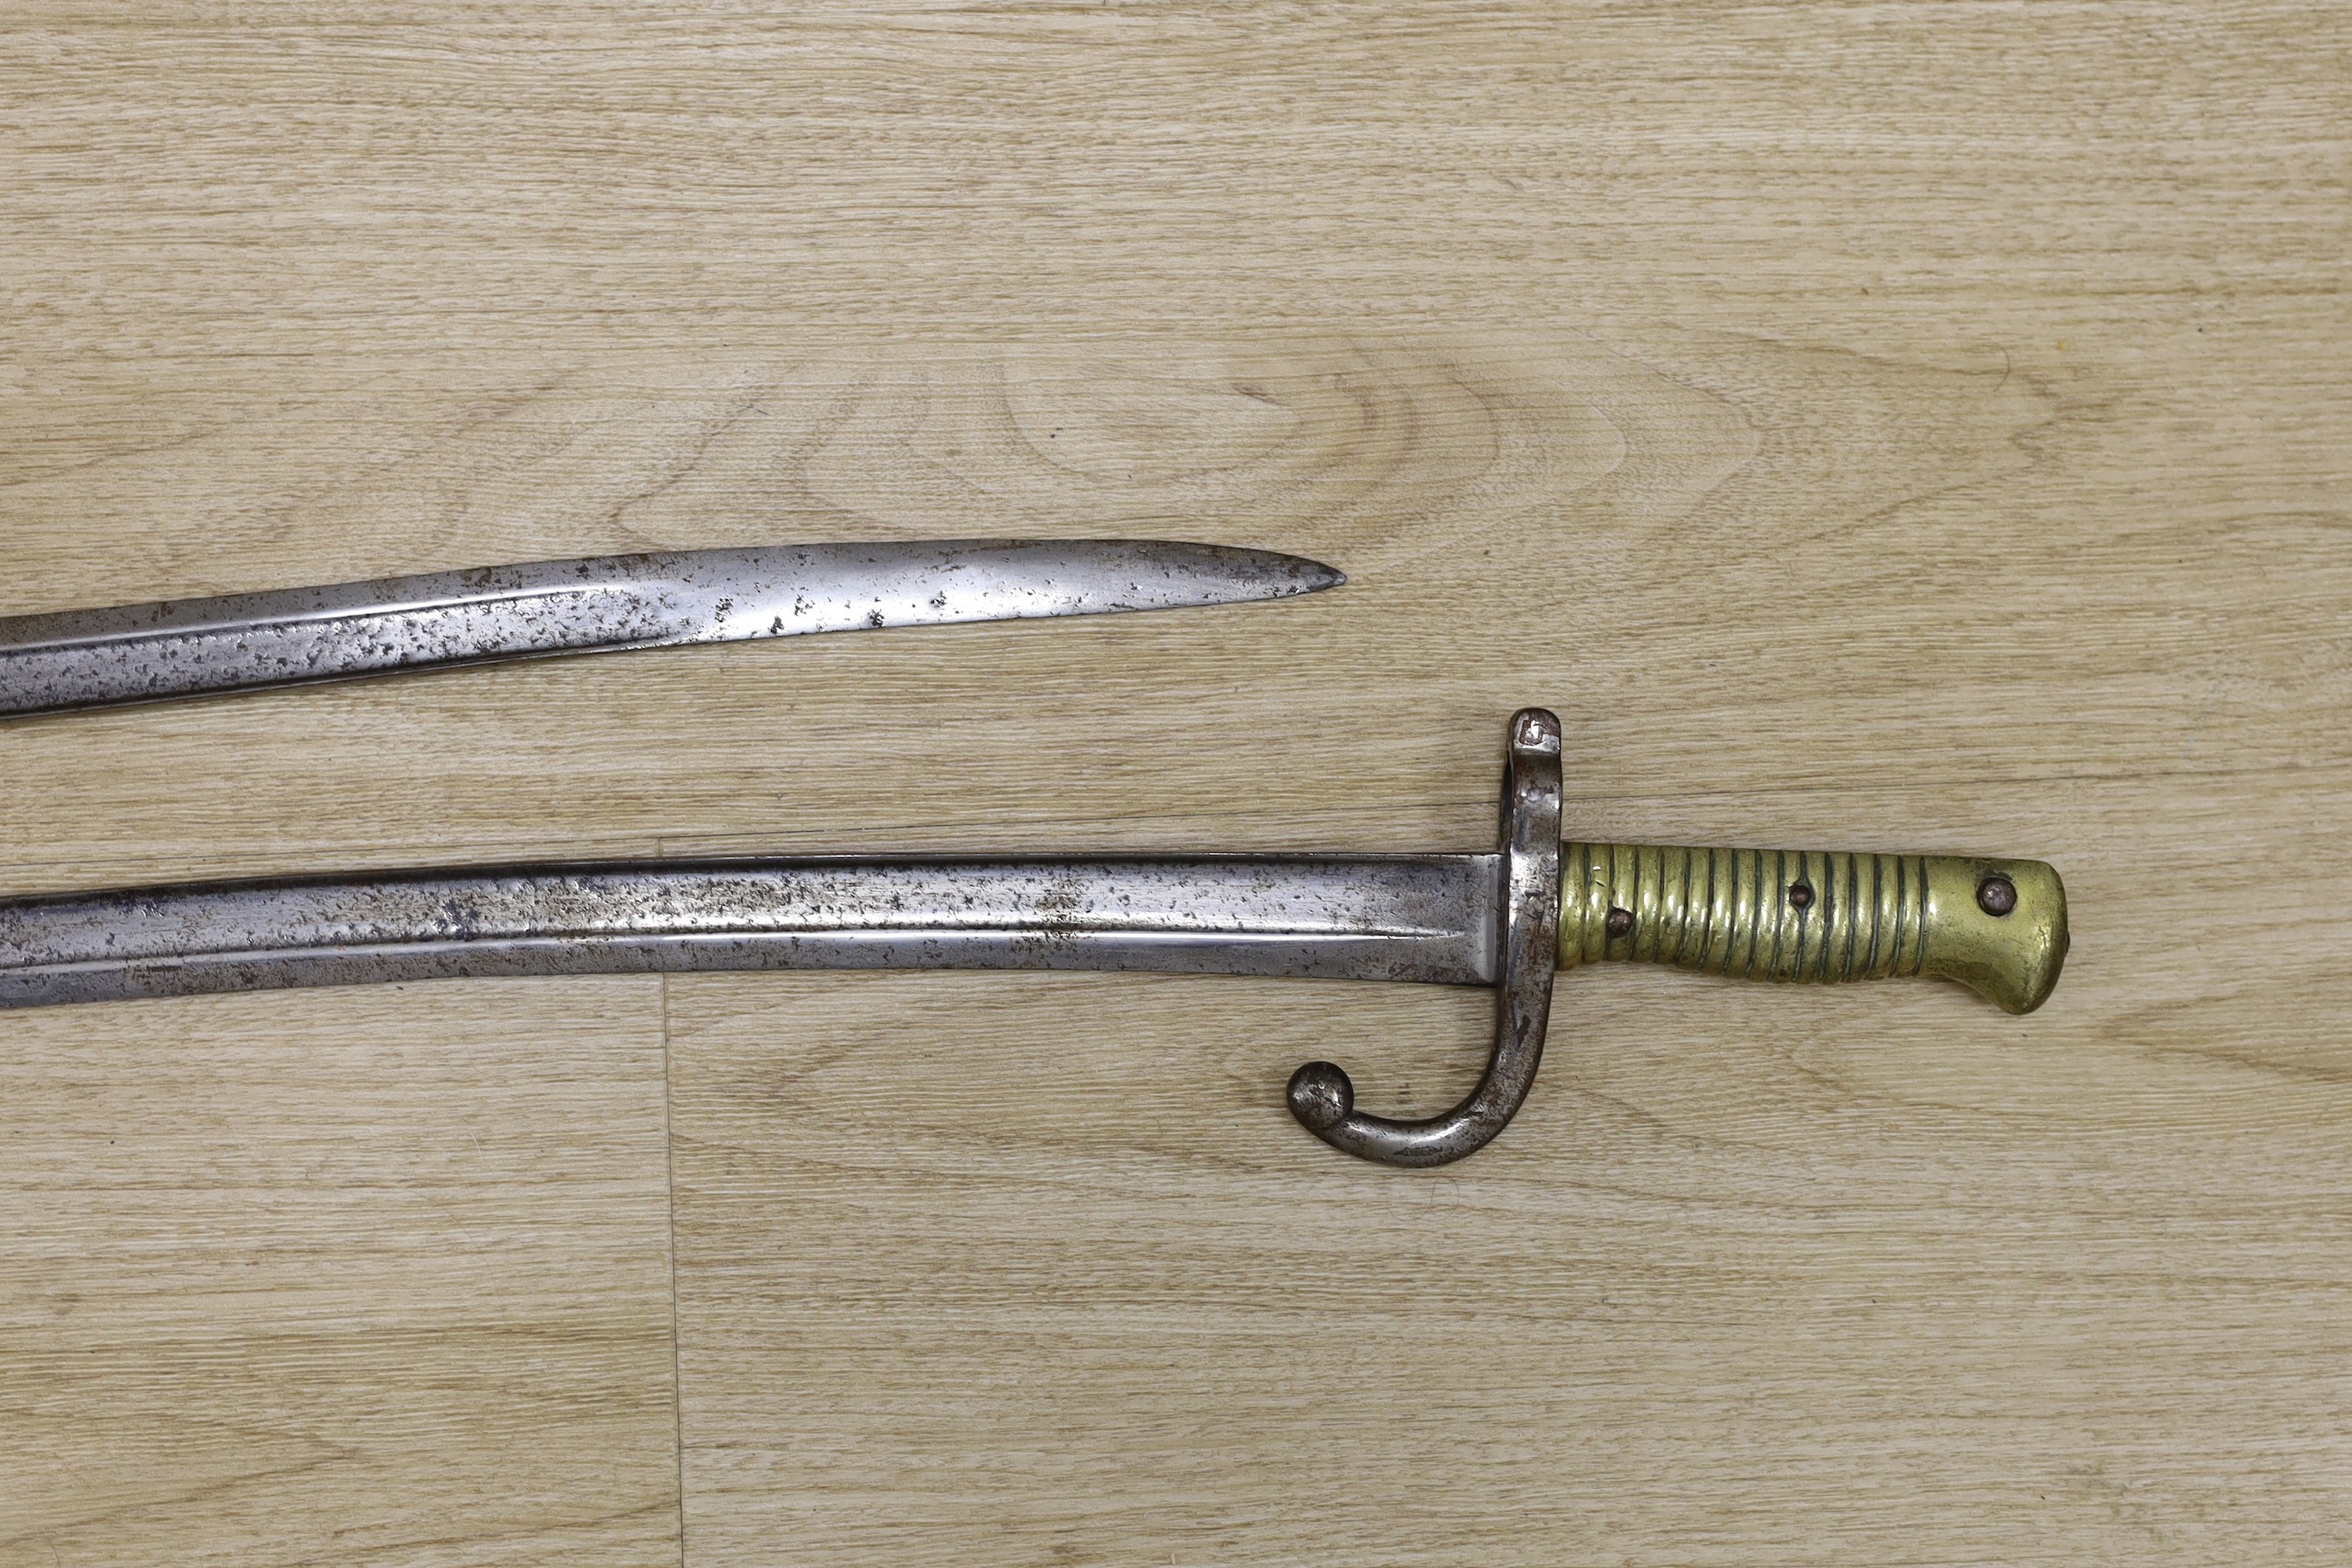 Two 19th century European bayonets, 69cm tall